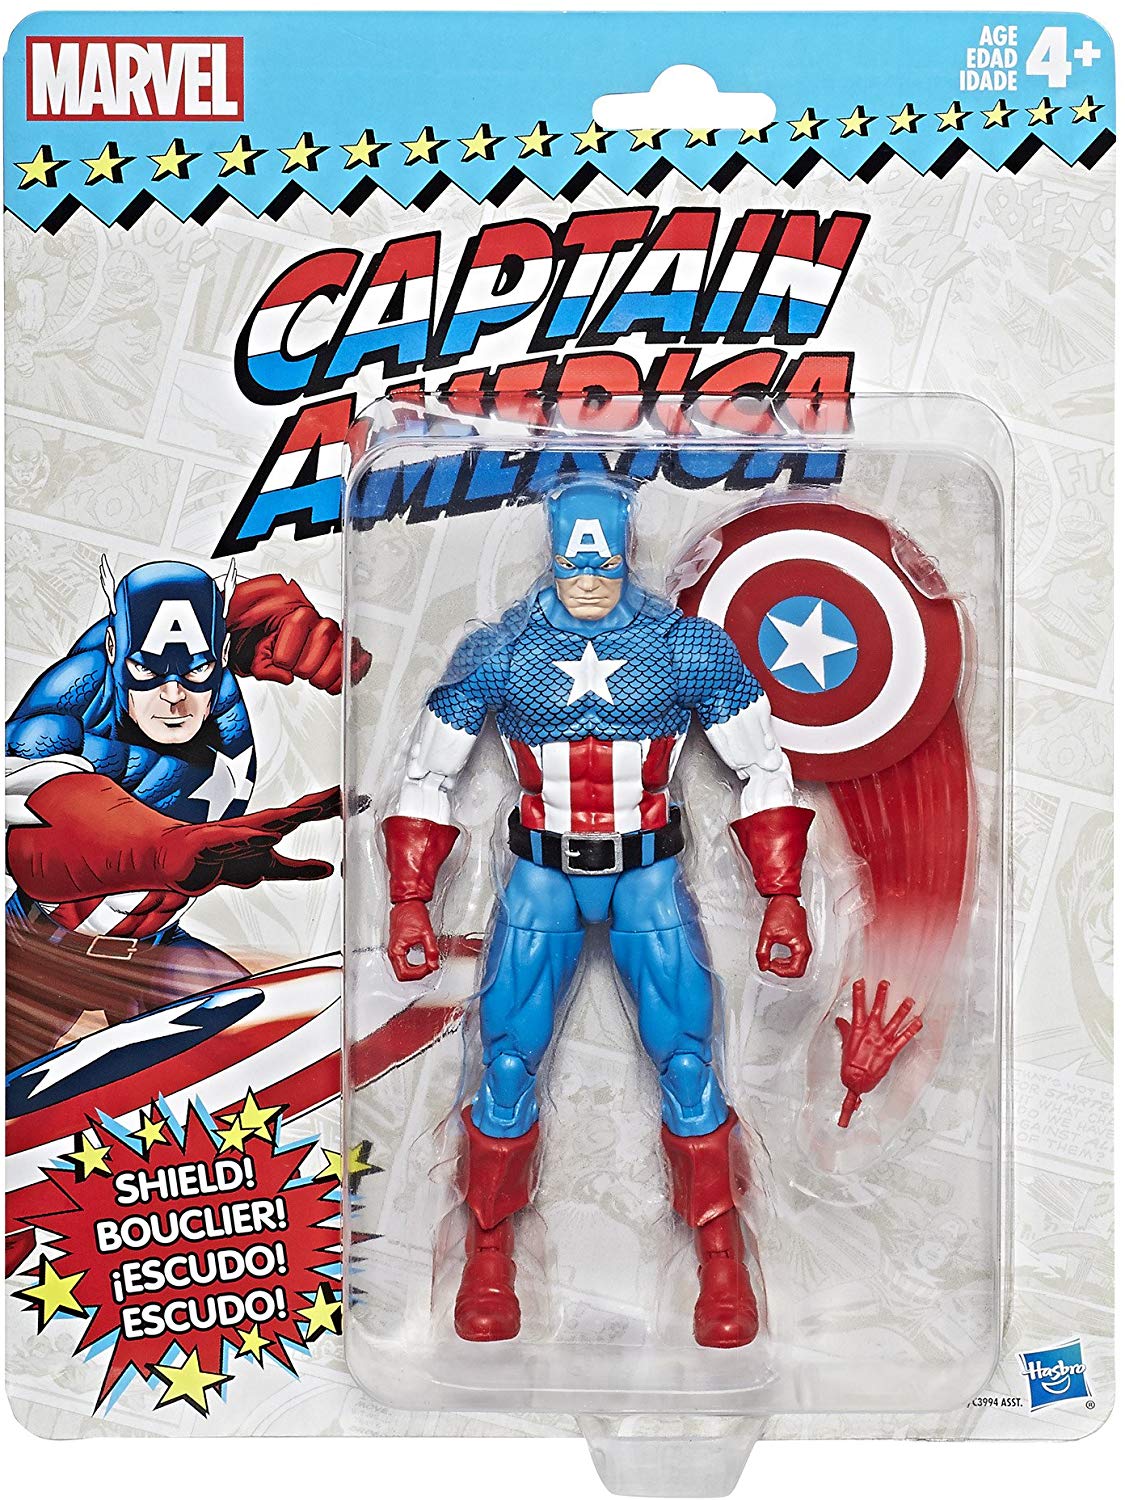 Marvel Legends Vintage Retro Series Captain America Wave 1 Action Figure 1